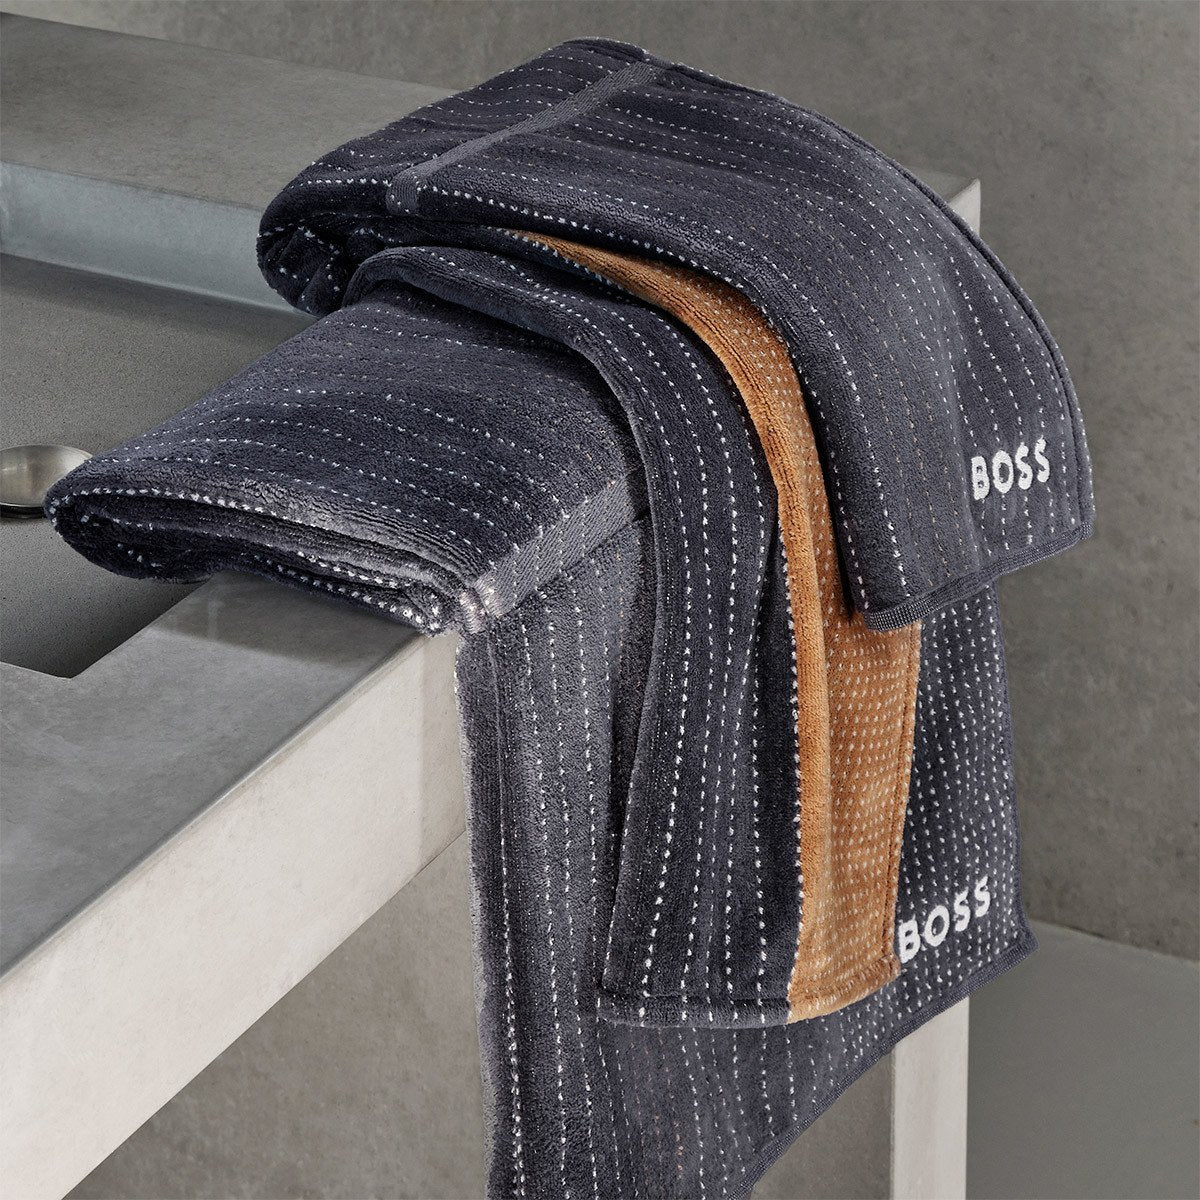 Luxusní ručníky z organické bavlny 450 gr/m2 BOSS TENNIS STRIPES black